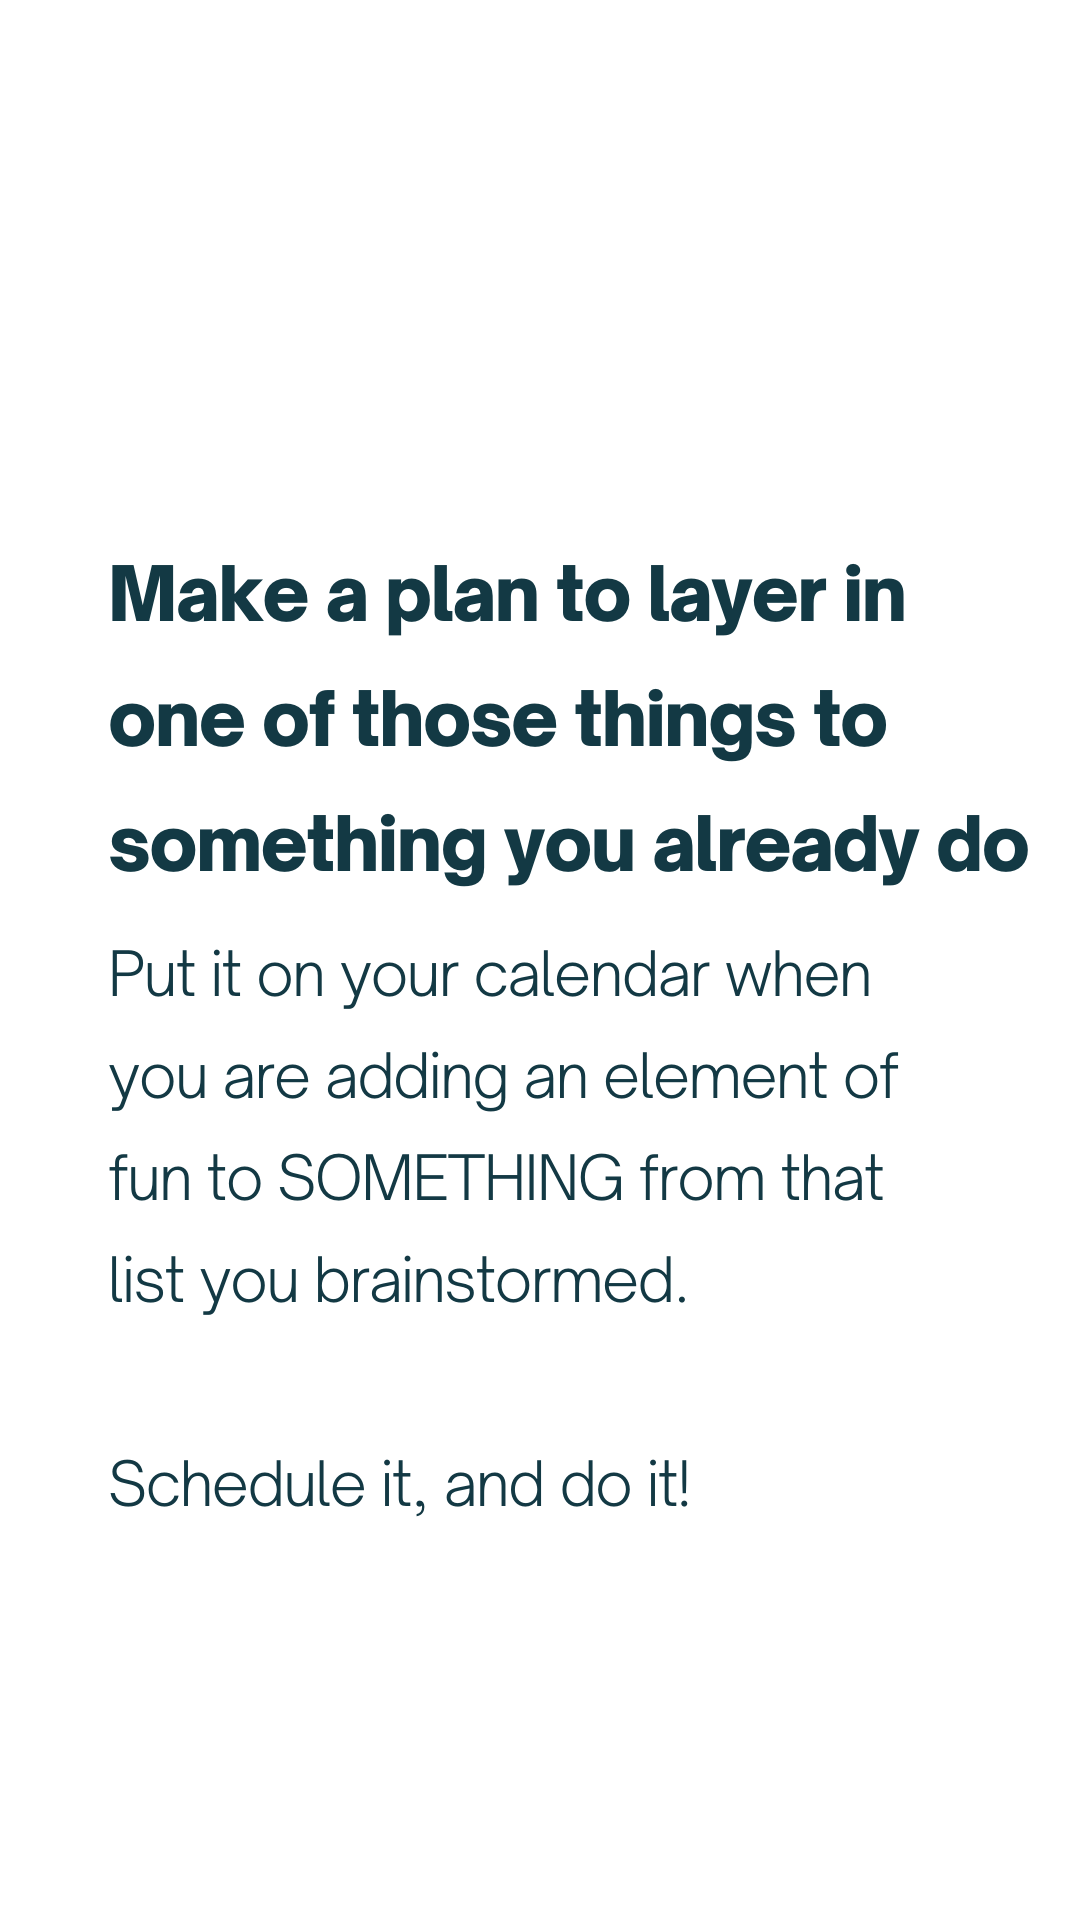 Plan it in